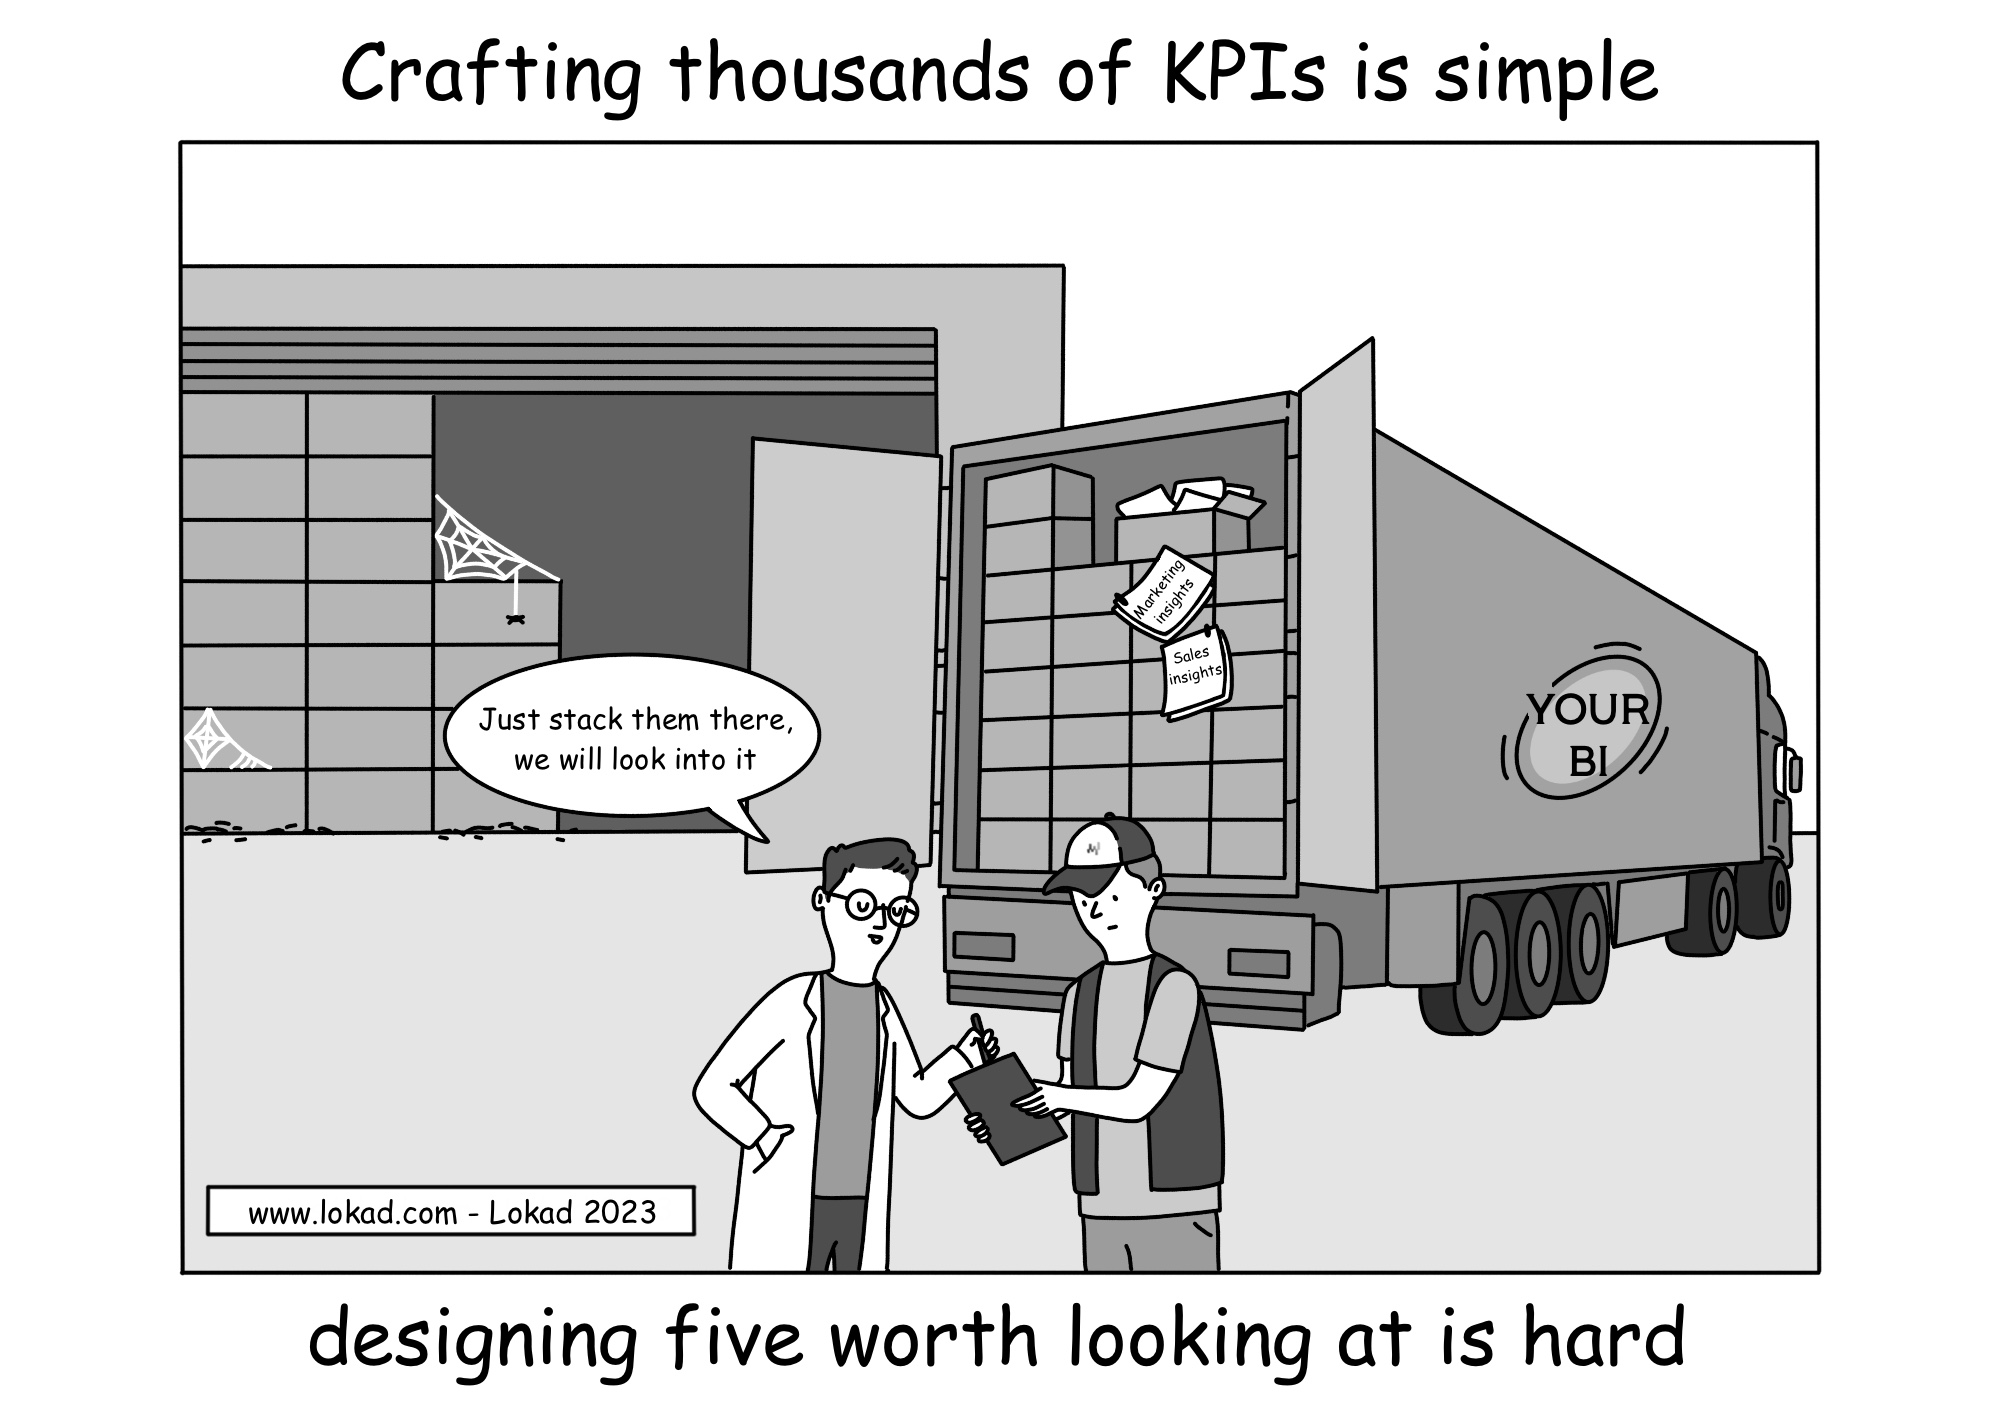 La création de milliers de KPI est simple